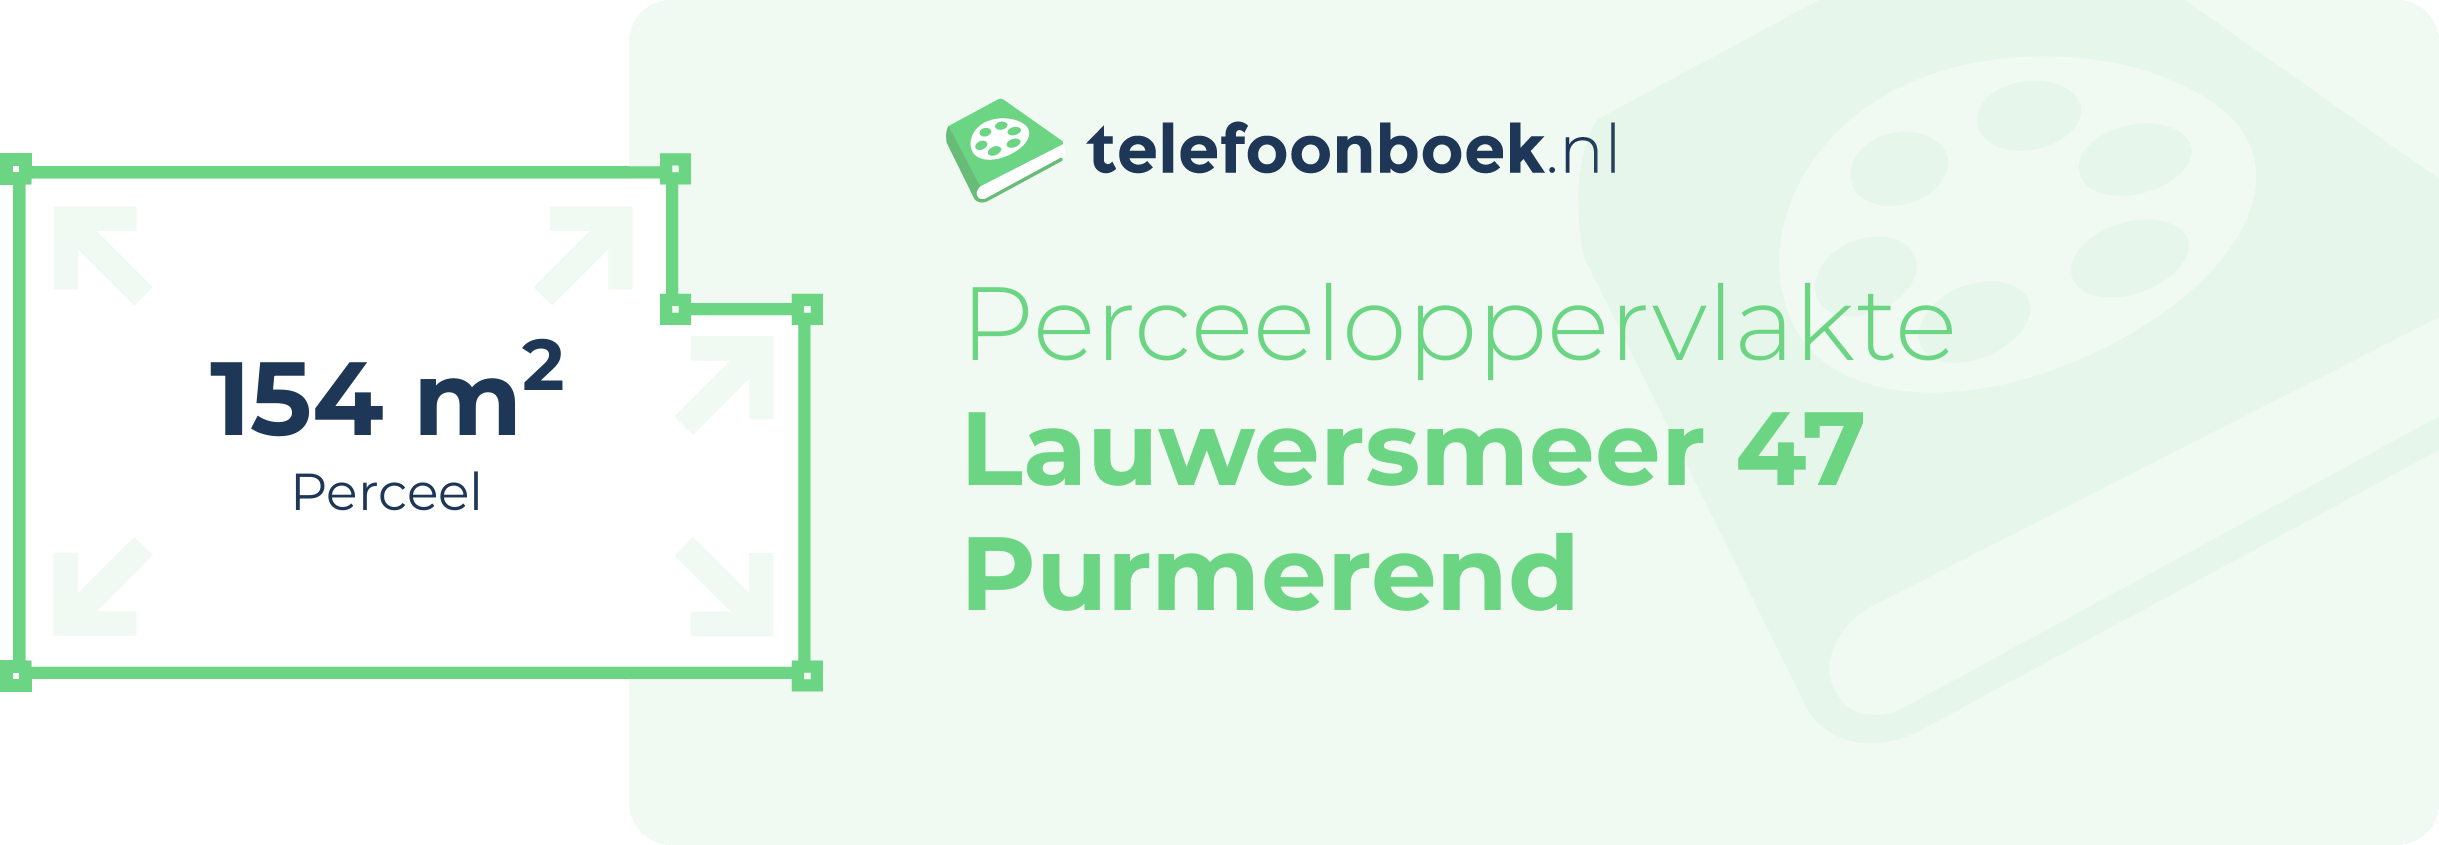 Perceeloppervlakte Lauwersmeer 47 Purmerend